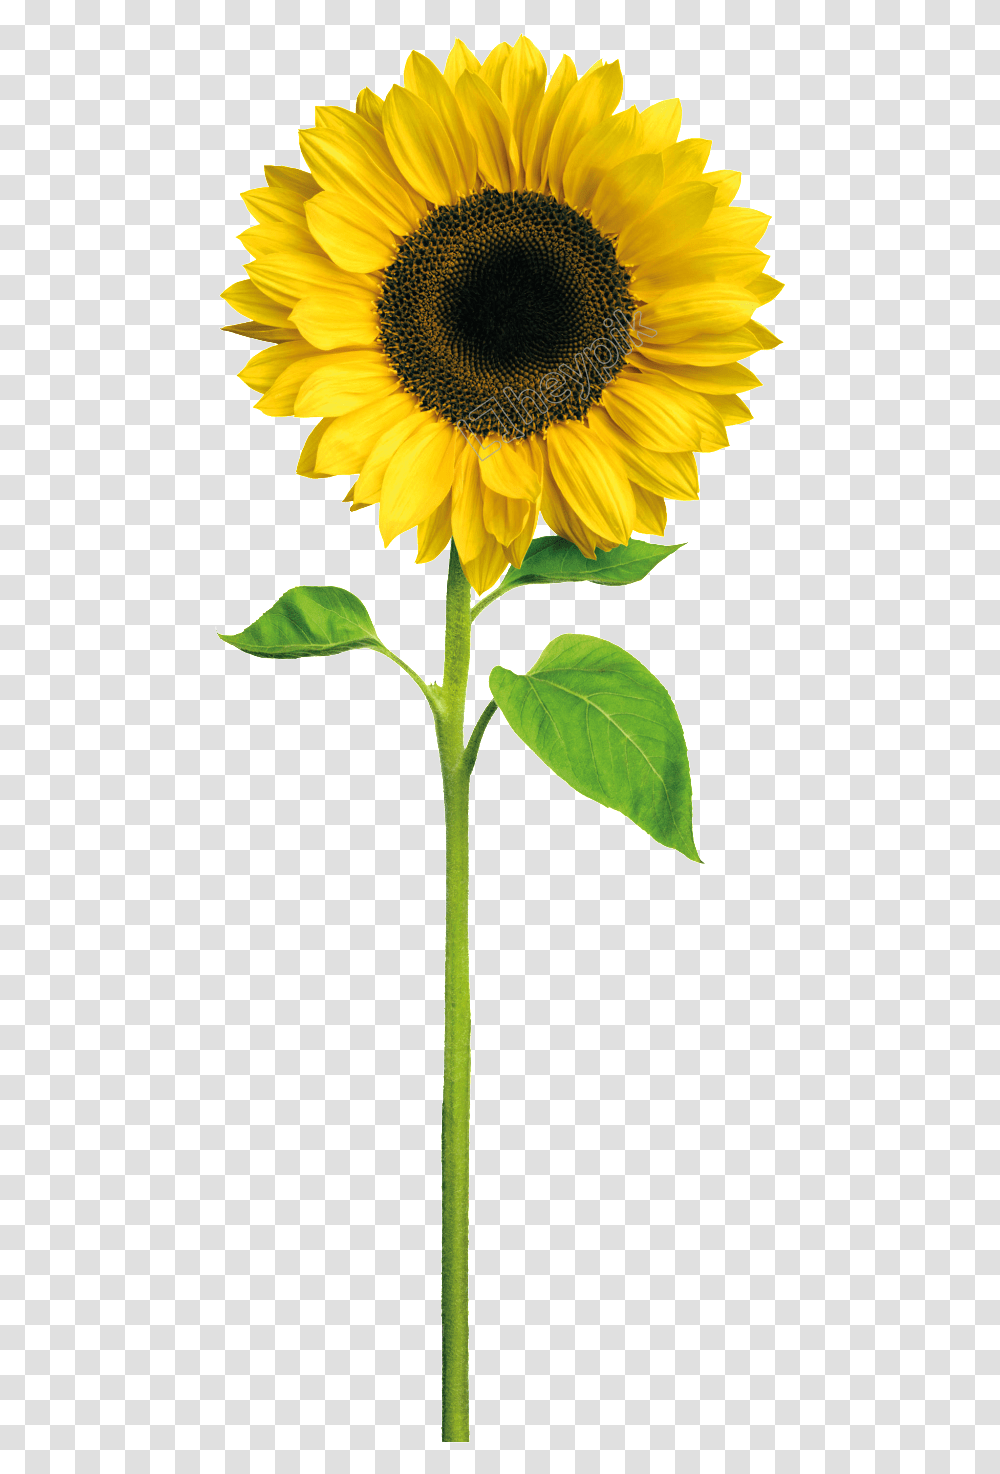 Image Result For Cartoon Sunflower De Um Girassol, Plant, Blossom, Petal Transparent Png